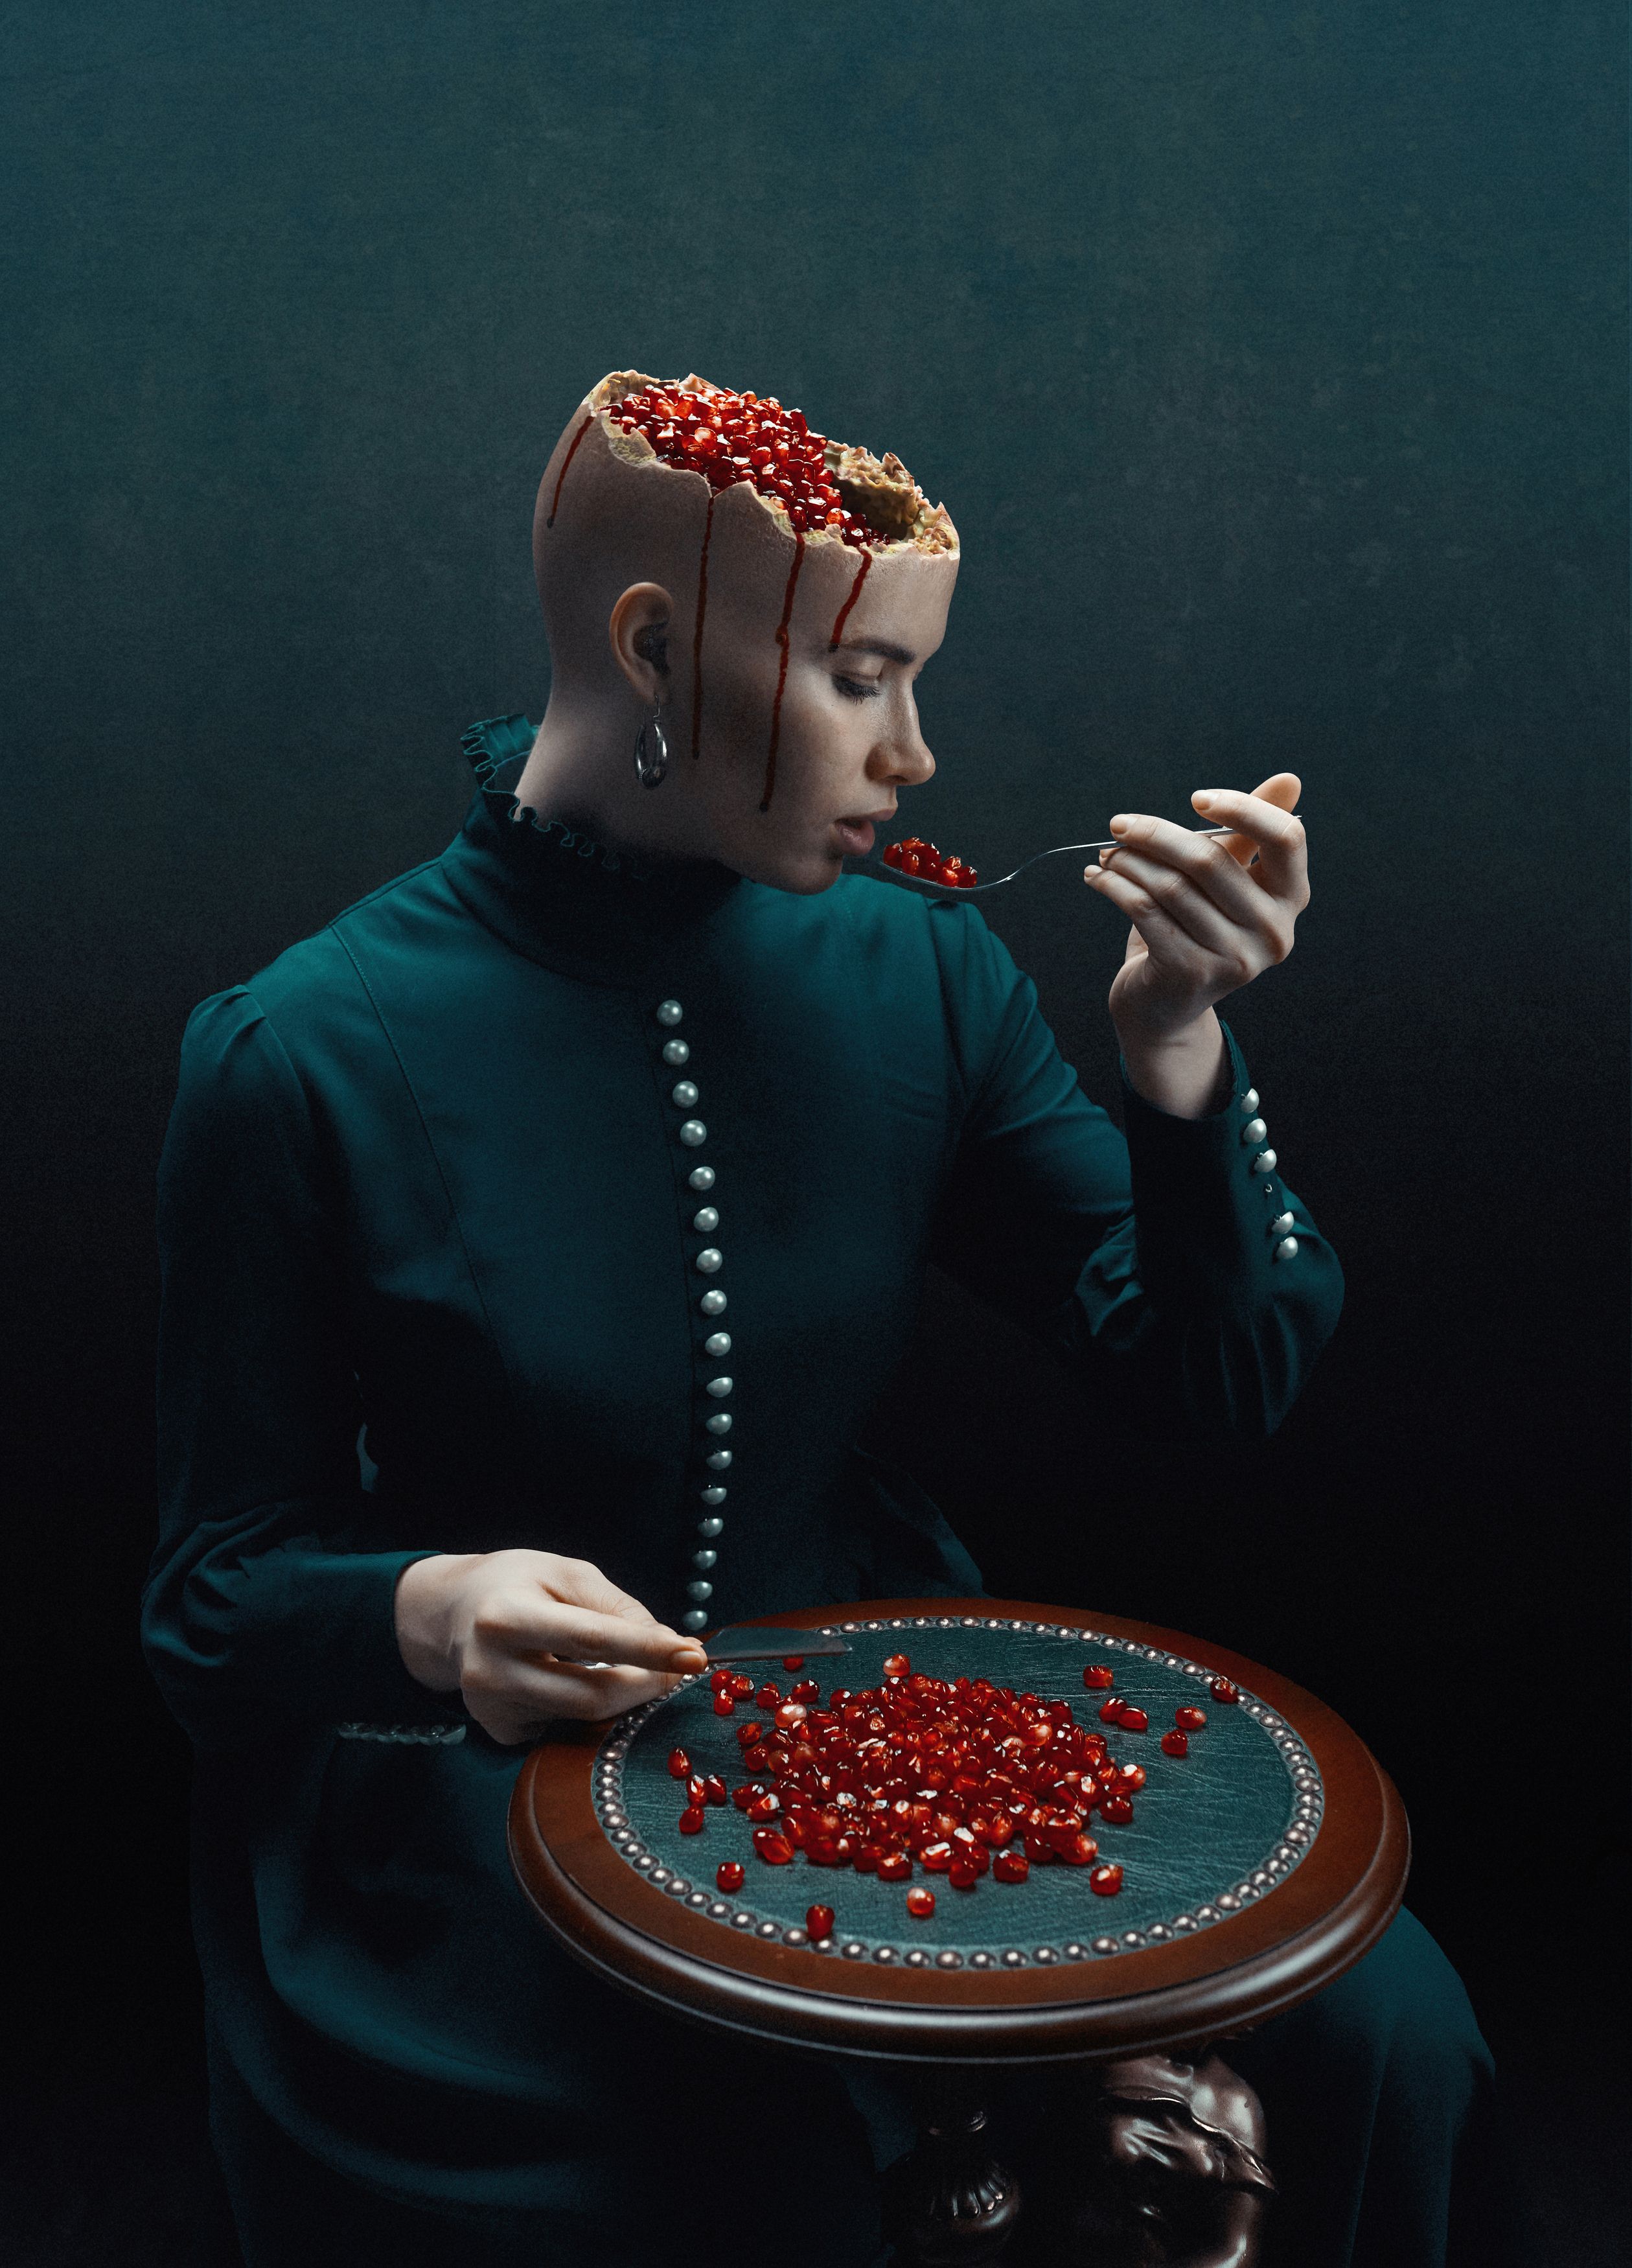 сюрреализм женский портрет концептуальное завтрак обед прием пищи еда гранат психическое расстройство, Хайруллин Ильдар